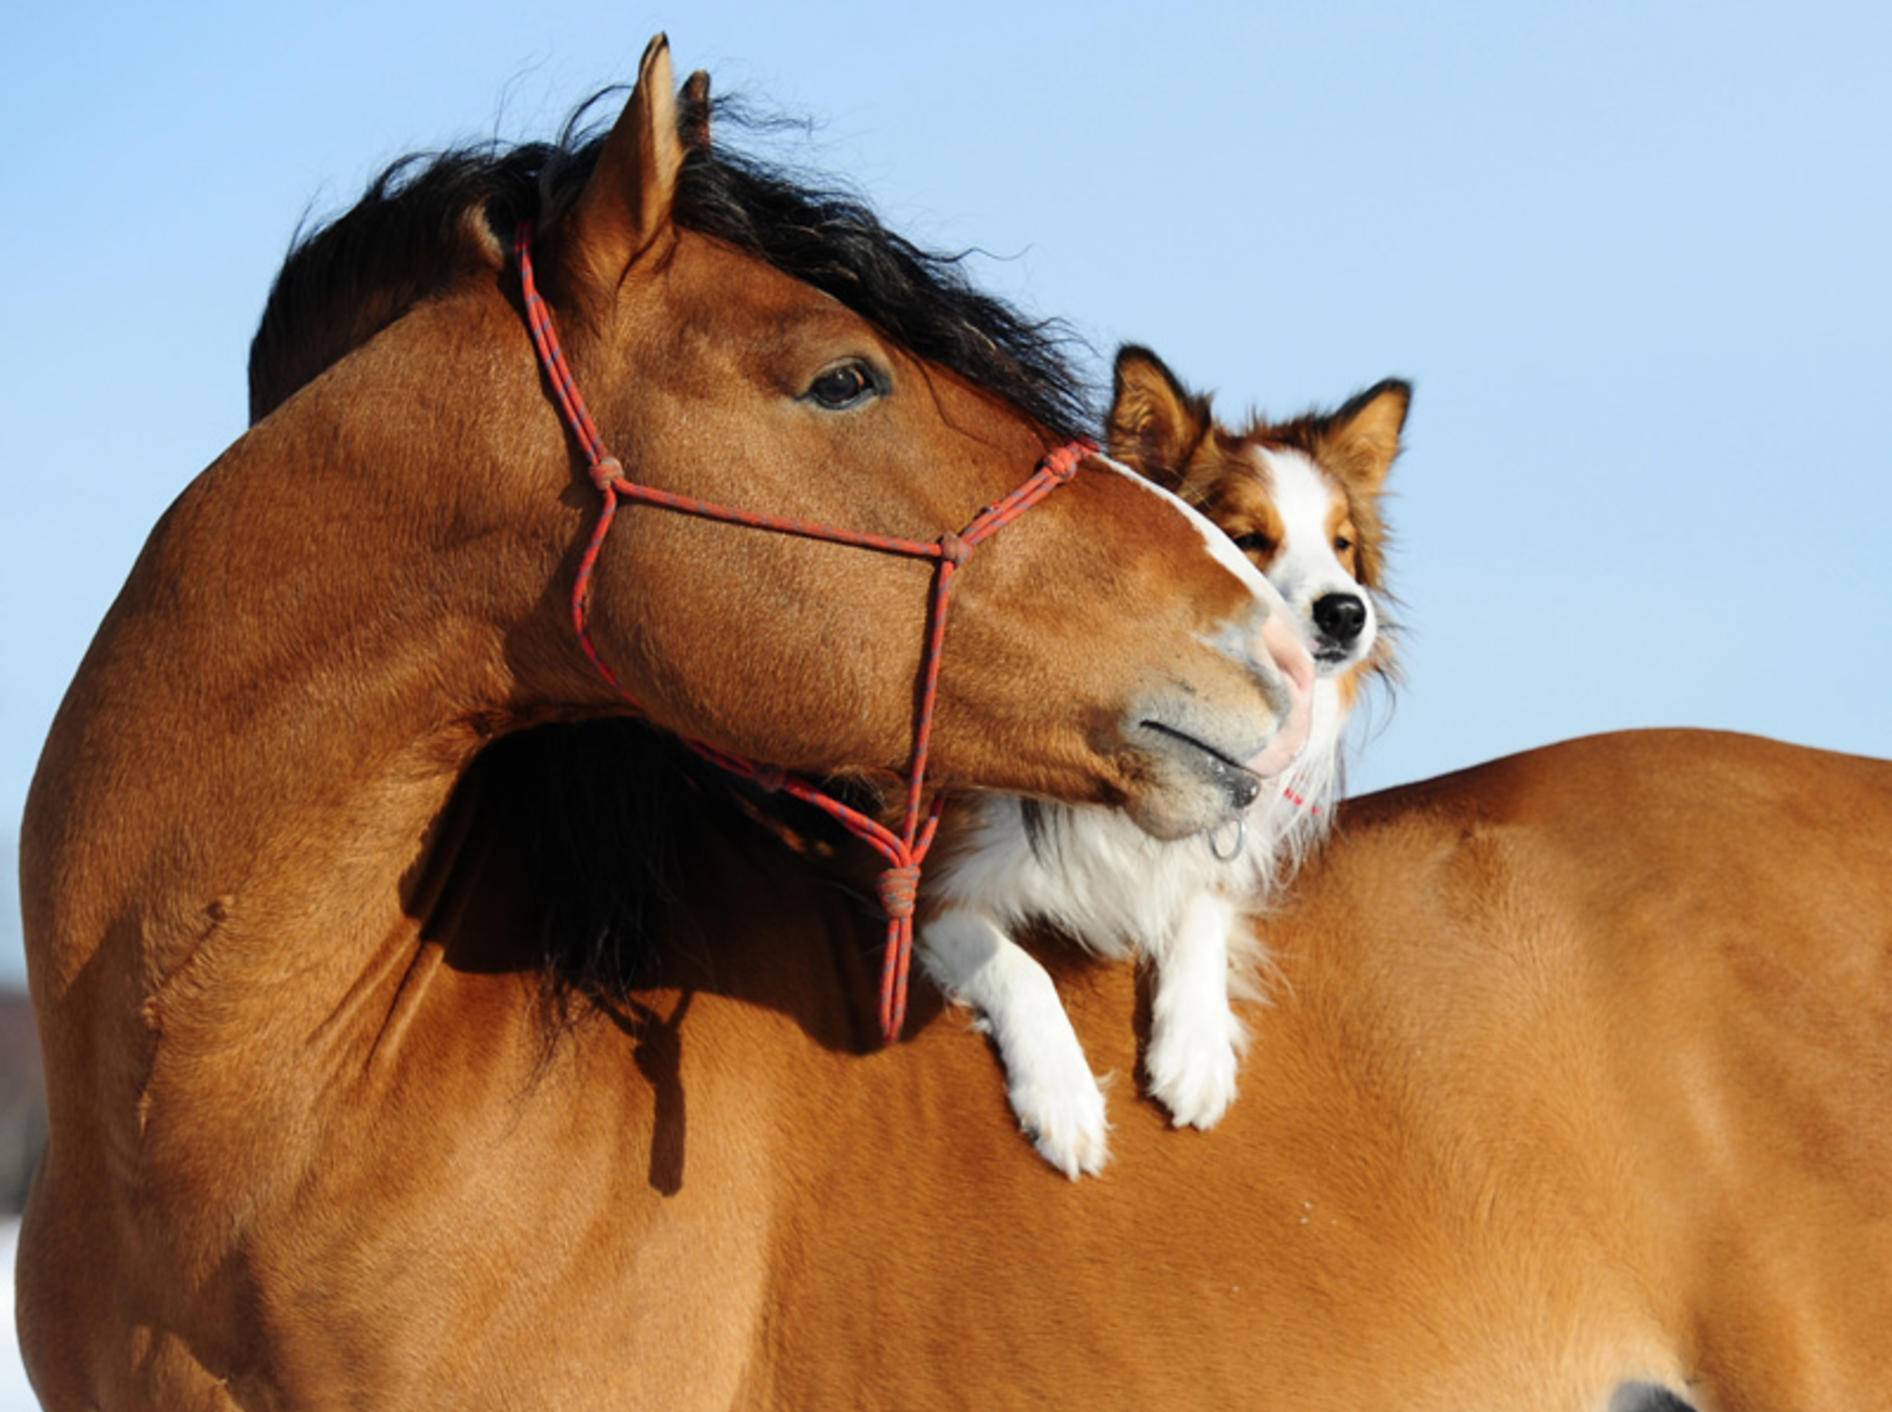 Freunde machen glücklich – finden auch dieses Pferd und sein süßer Hunde-Freund – Bild: Shutterstock / Makarova Viktoria